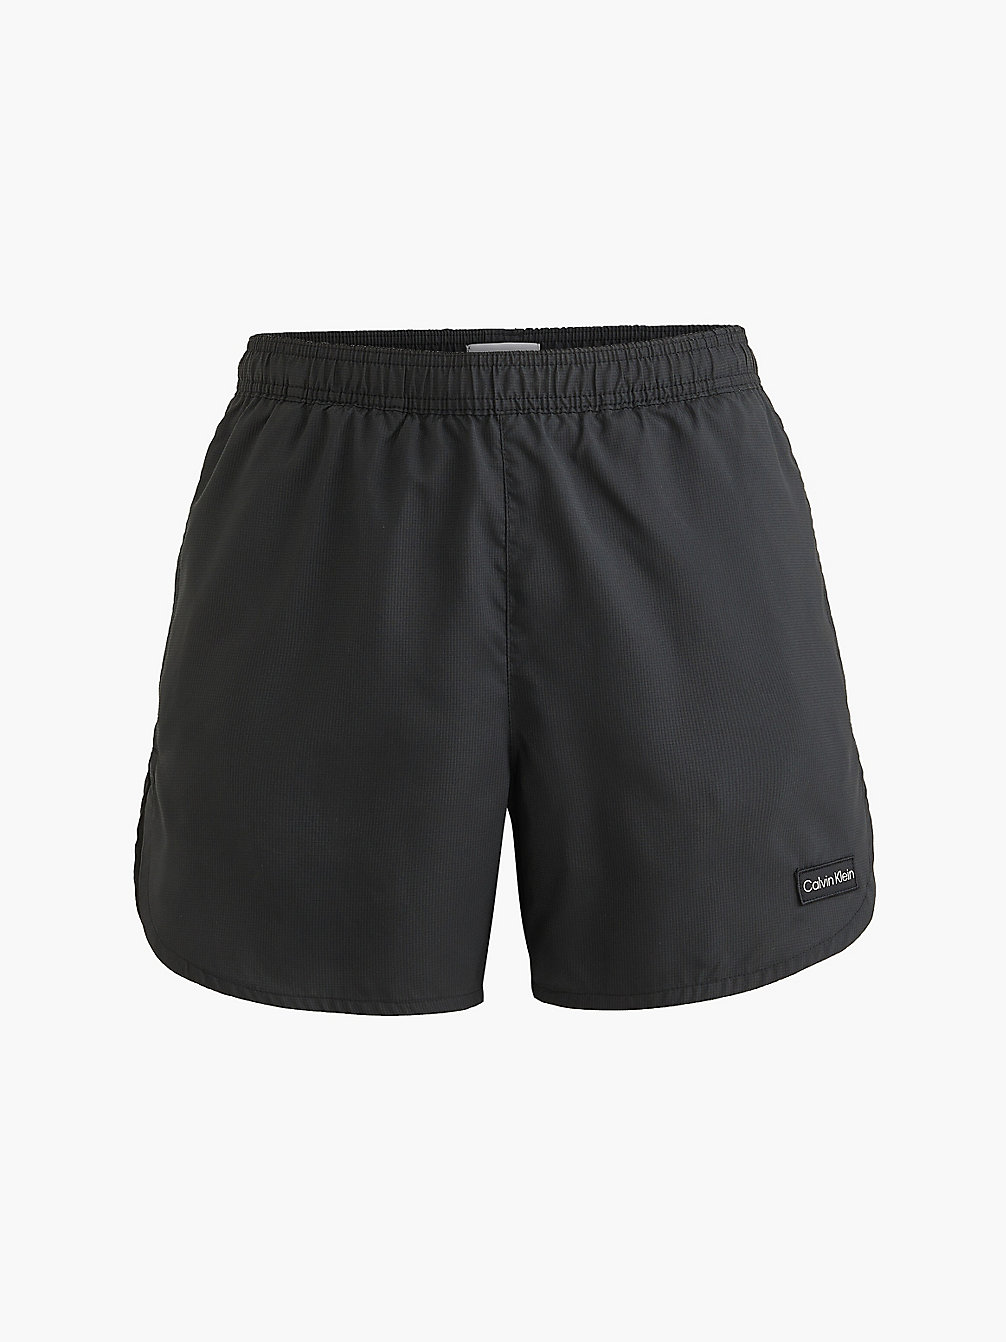 PVH BLACK Medium Runner Swim Shorts - CK Texture undefined men Calvin Klein